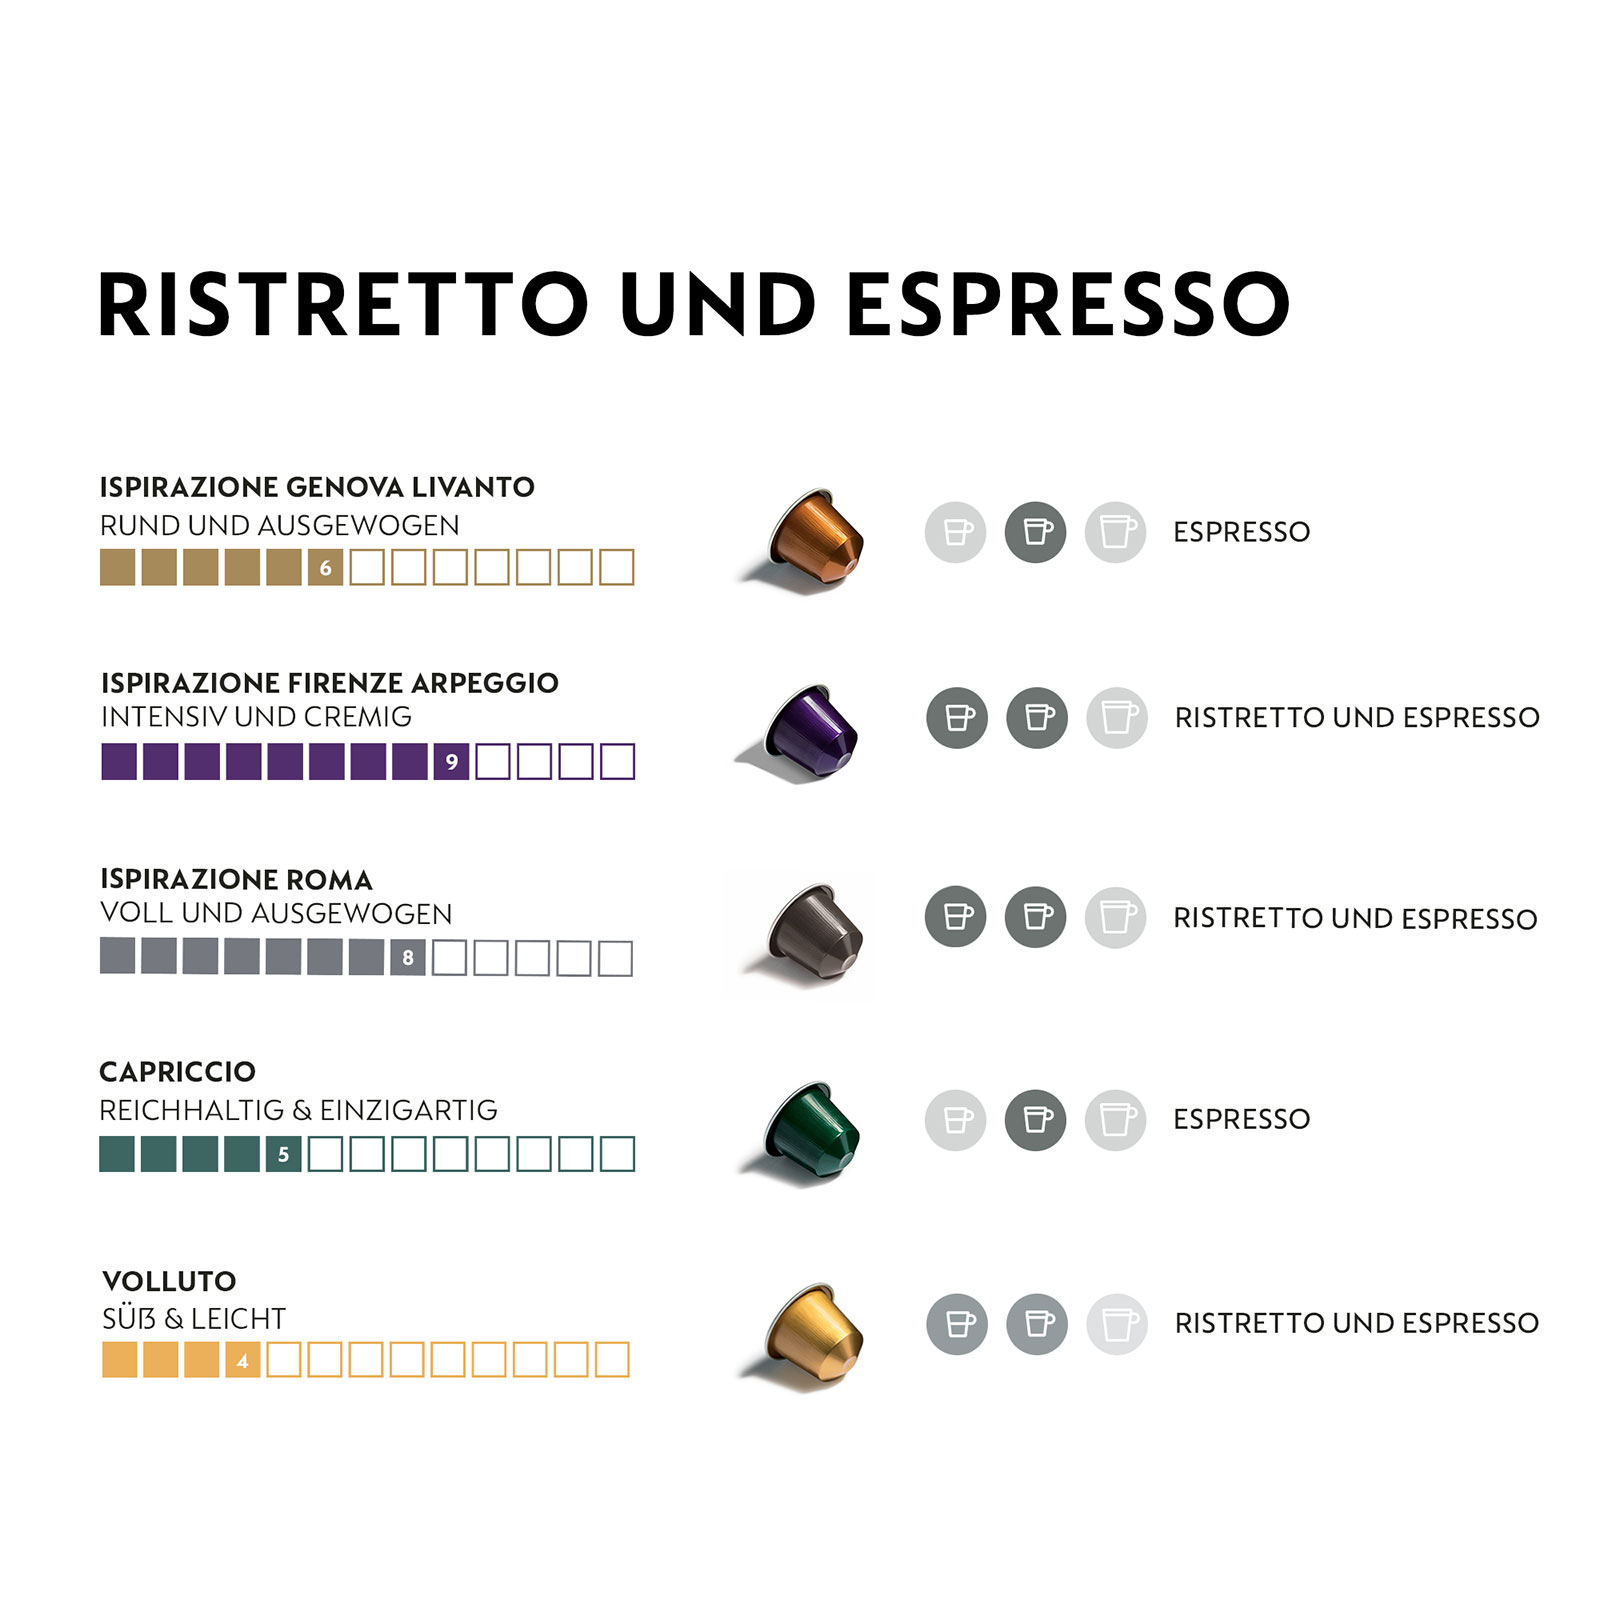 Auswahl und Kaffeekapseln (Ristretto 5 Espresso) NESPRESSO 50 Sorten aus ORIGINAL